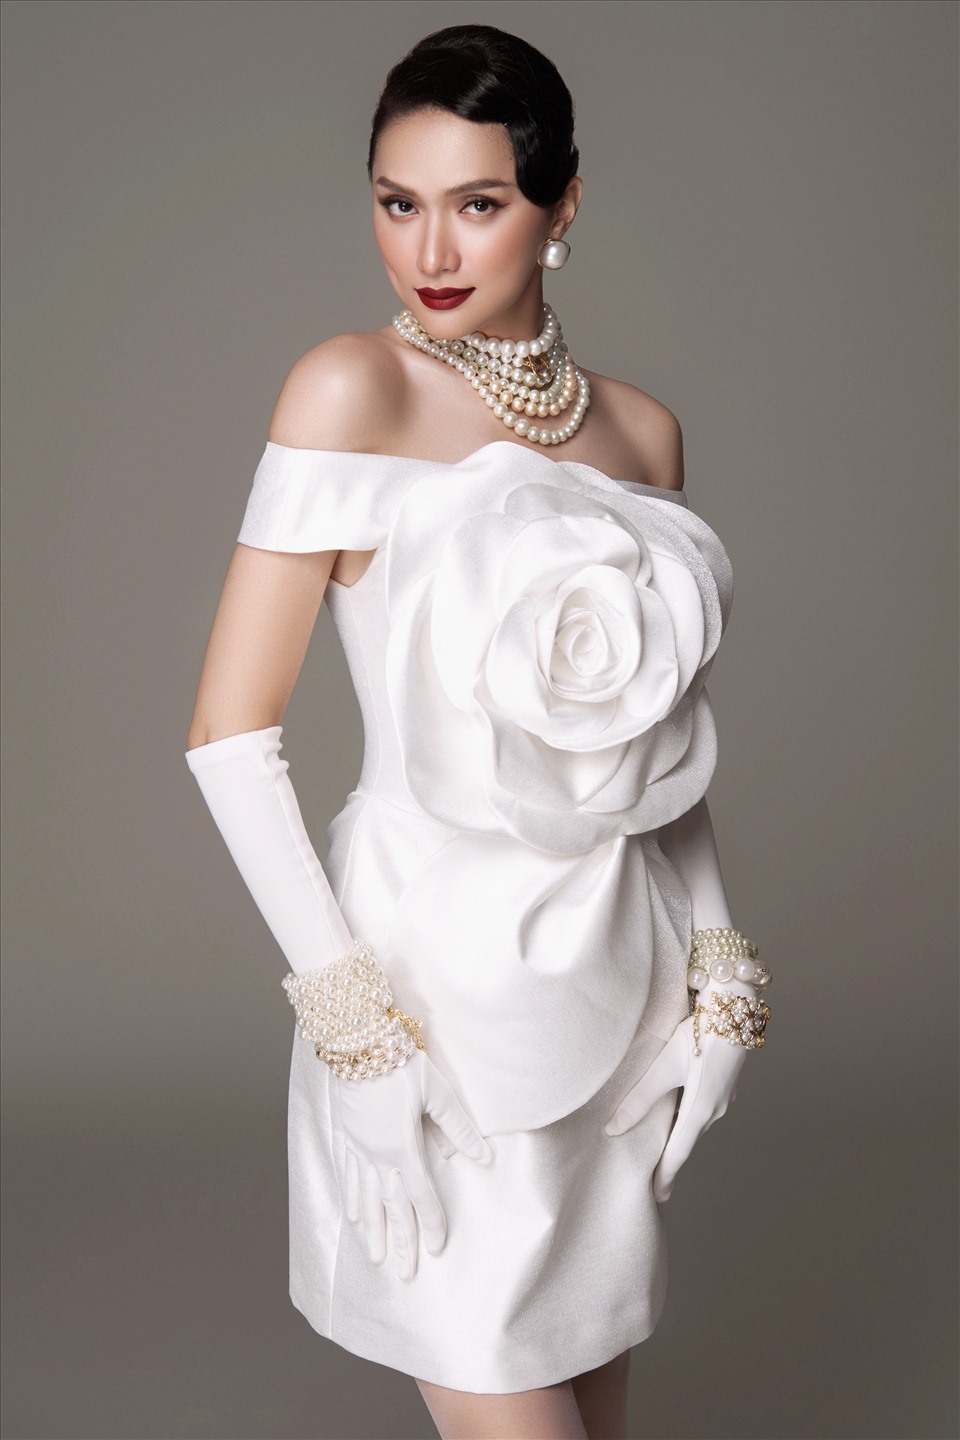 Người đẹp nổi bật khi diện váy màu trắng có chi tiết hoa trà 3D to bản. Hương Giang mang nhiều phụ kiện ngọc trai cầu kỳ, tô son đỏ đậm thêm phần ấn tượng. Trang phục hoa trà cũng là điểm đặc trưng trong BST mới của Đỗ Mạnh Cường,